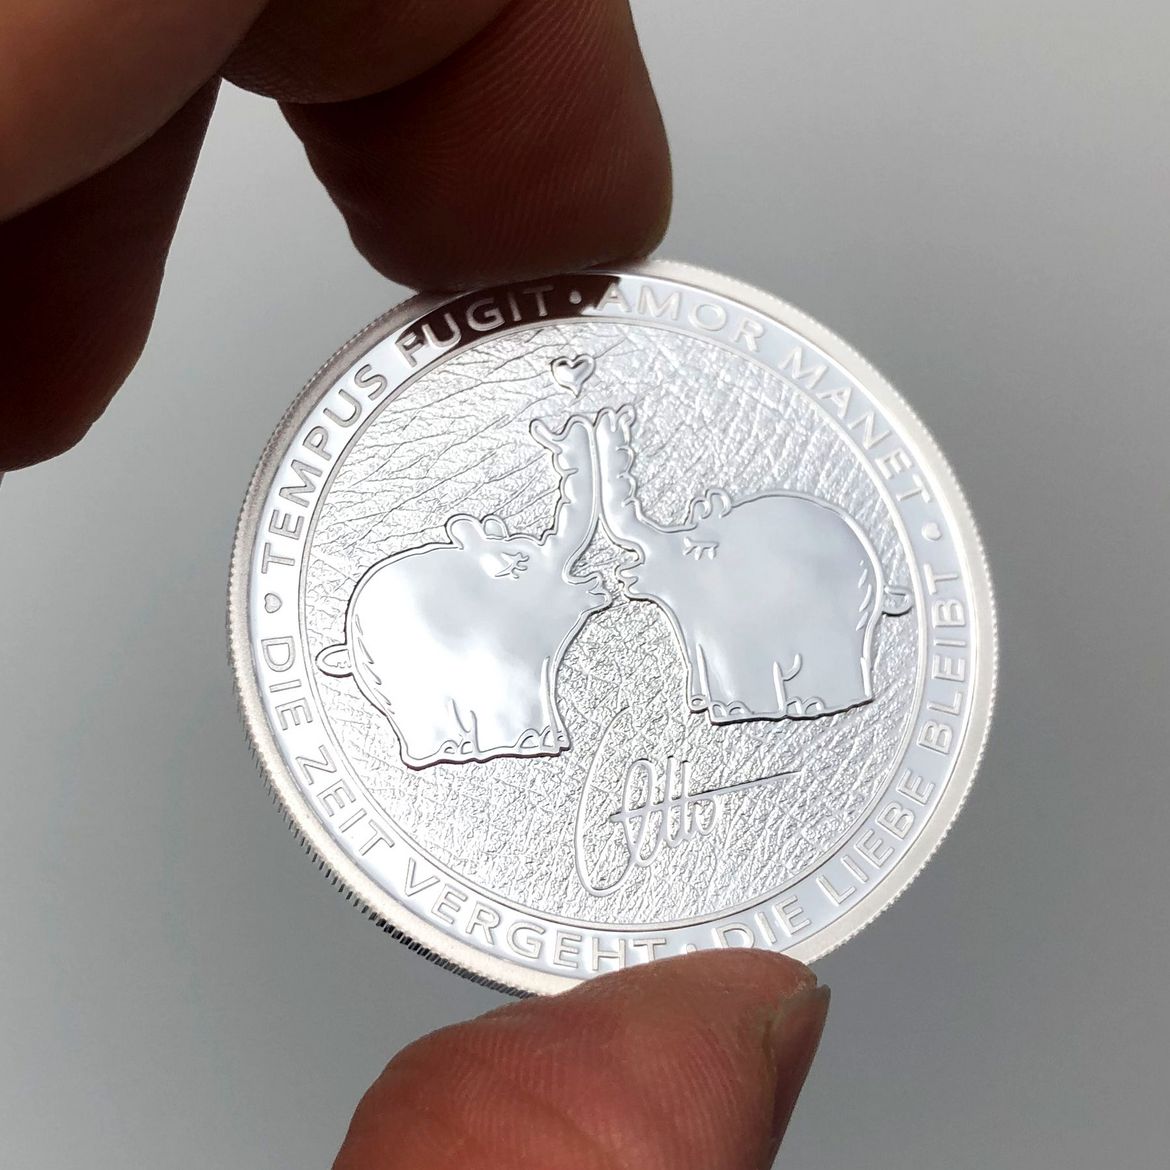 Ottifantenmünze der Perth Mint